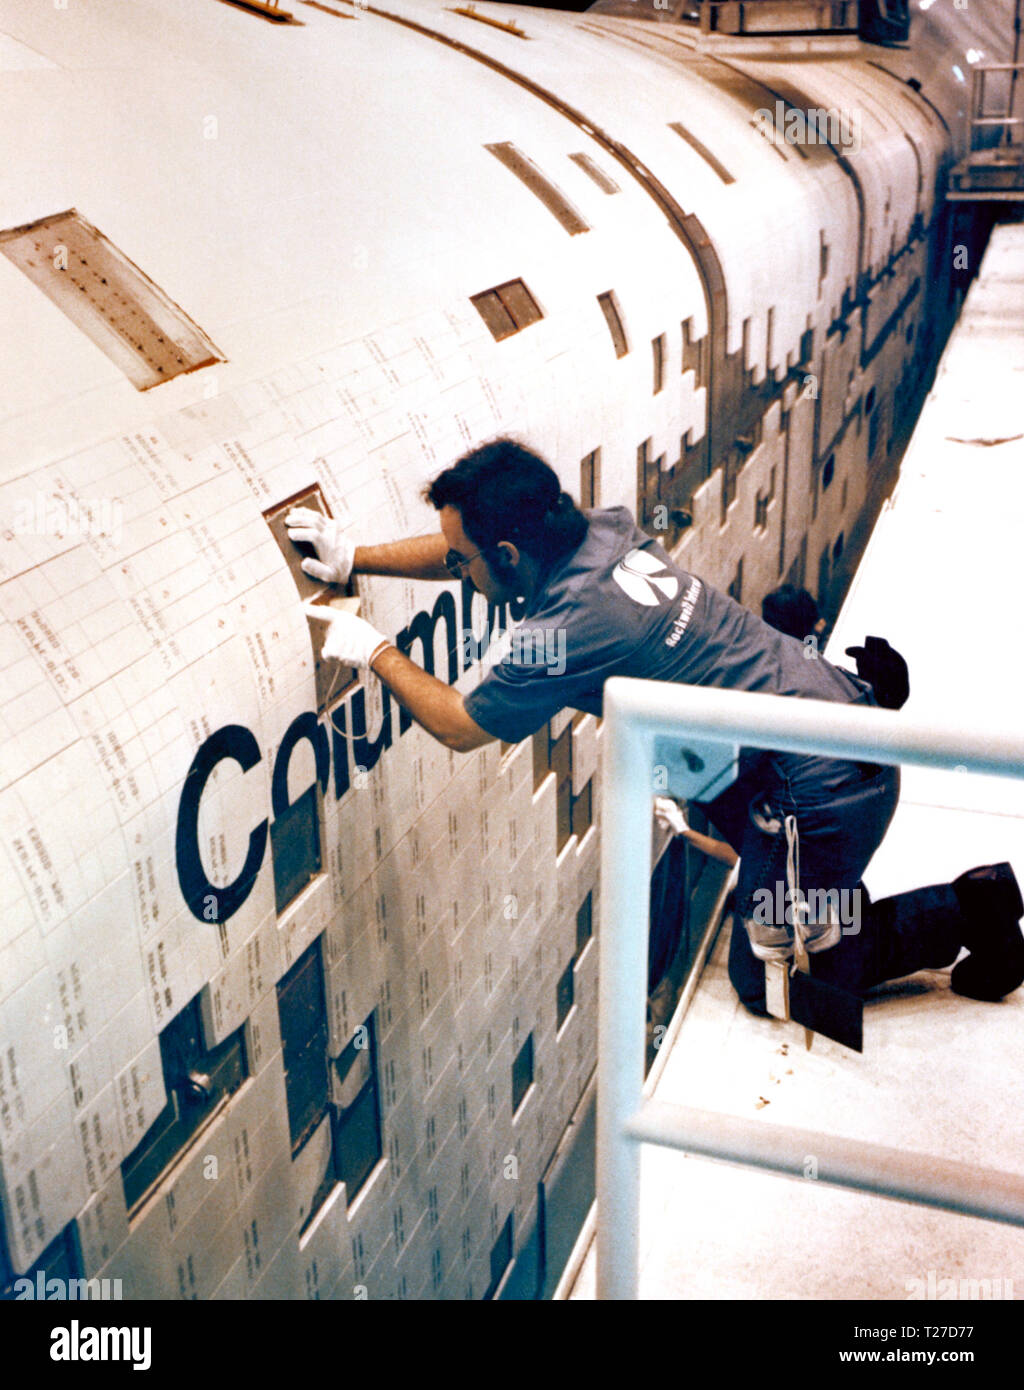 Rockwell International mont techniciens des carreaux de céramique à l'extérieur de la navette spatiale Columbia ca. 1980 Banque D'Images